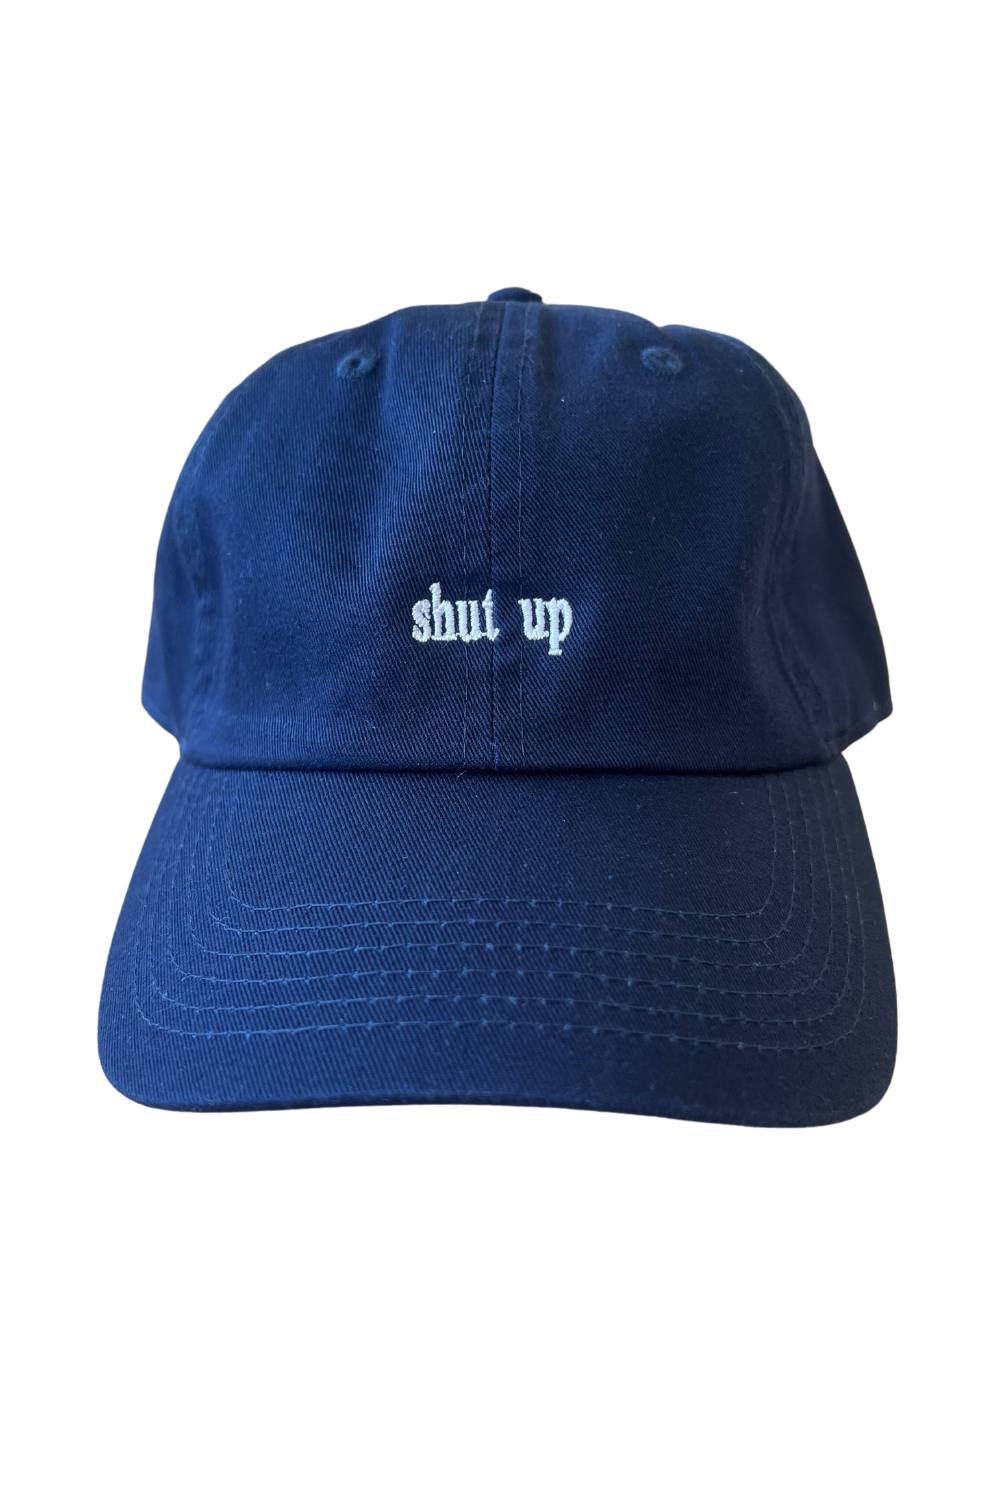 SHUT UP CAP | NAVY